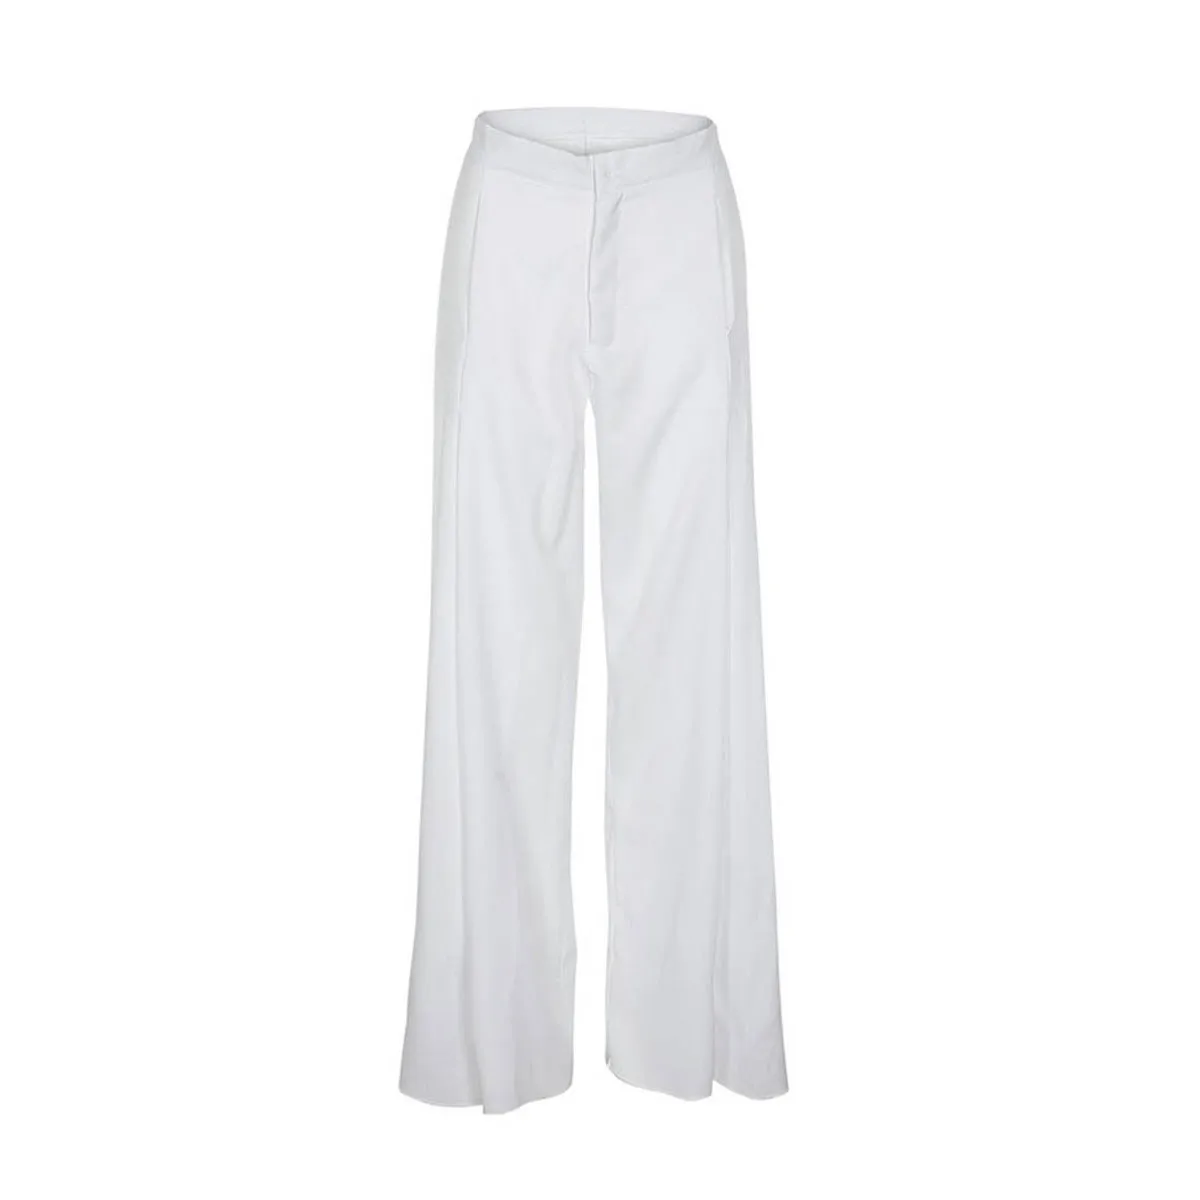 Kinikiss/ женские повседневные брюки с высокой талией, широкие брюки, Осенние желтые осенние белые свободные модные плиссированные женские брюки на молнии - Цвет: Белый